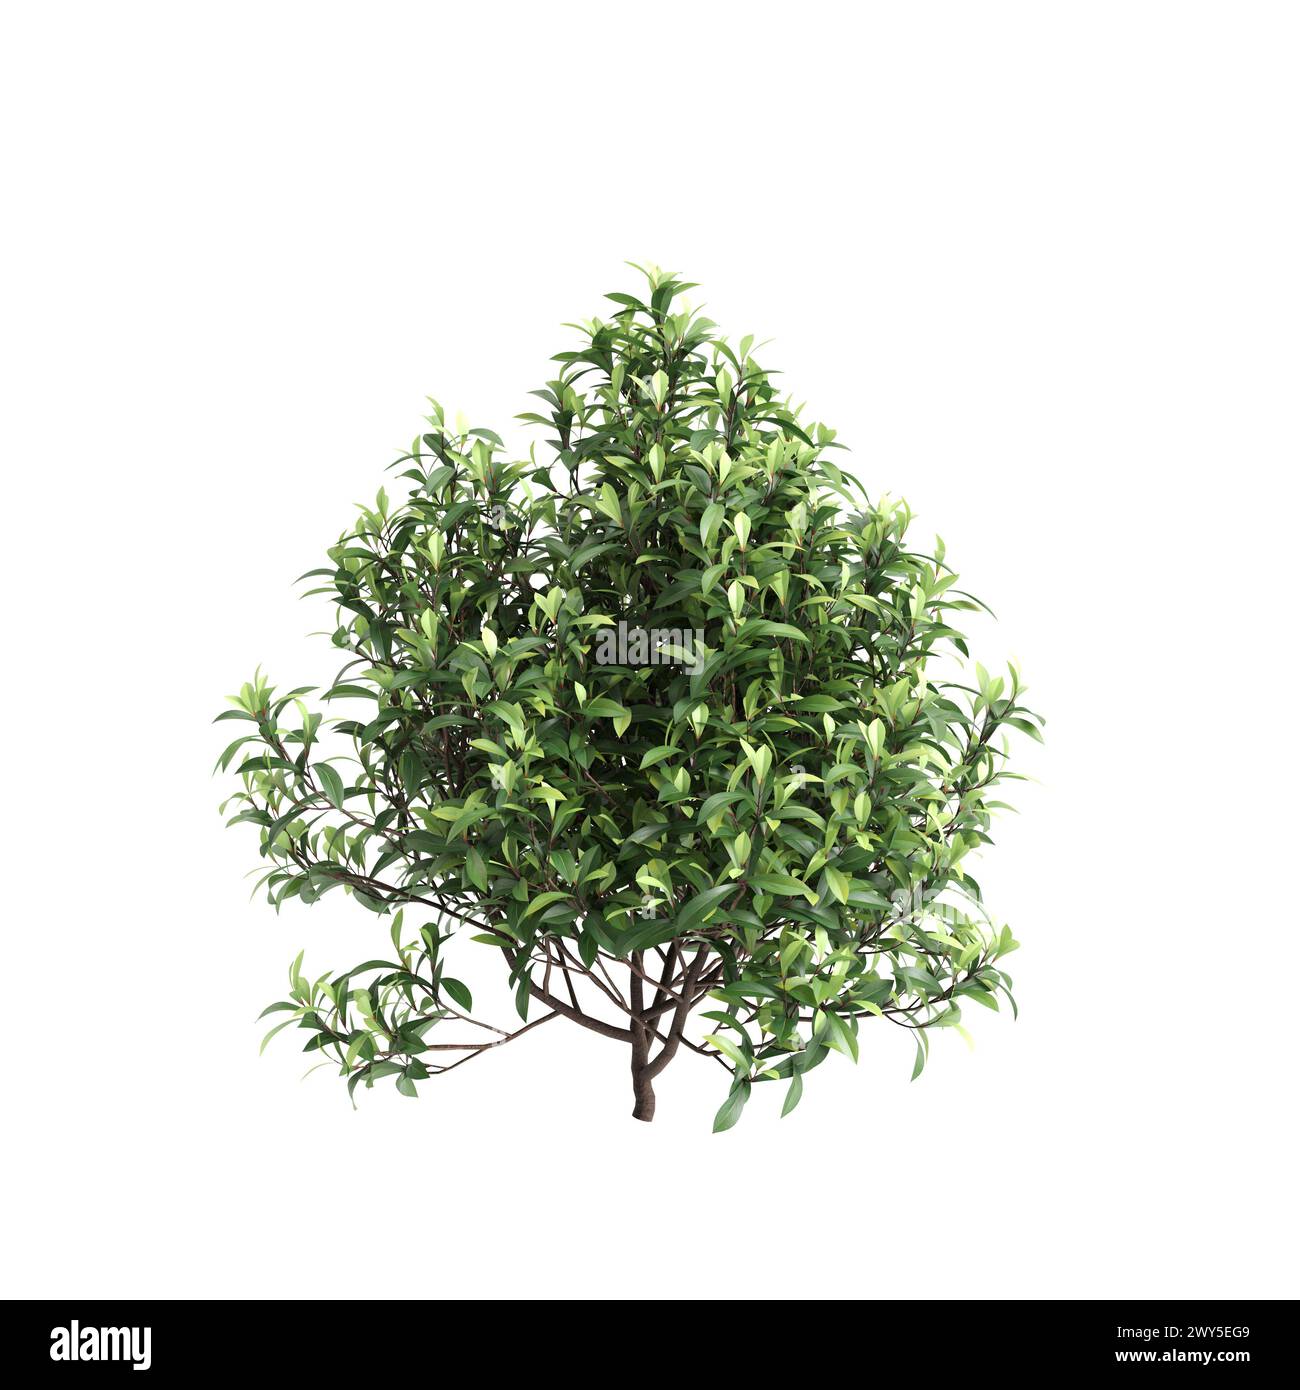 3d illustration of Tasmannia purpurascens tree isolated on black background Stock Photo